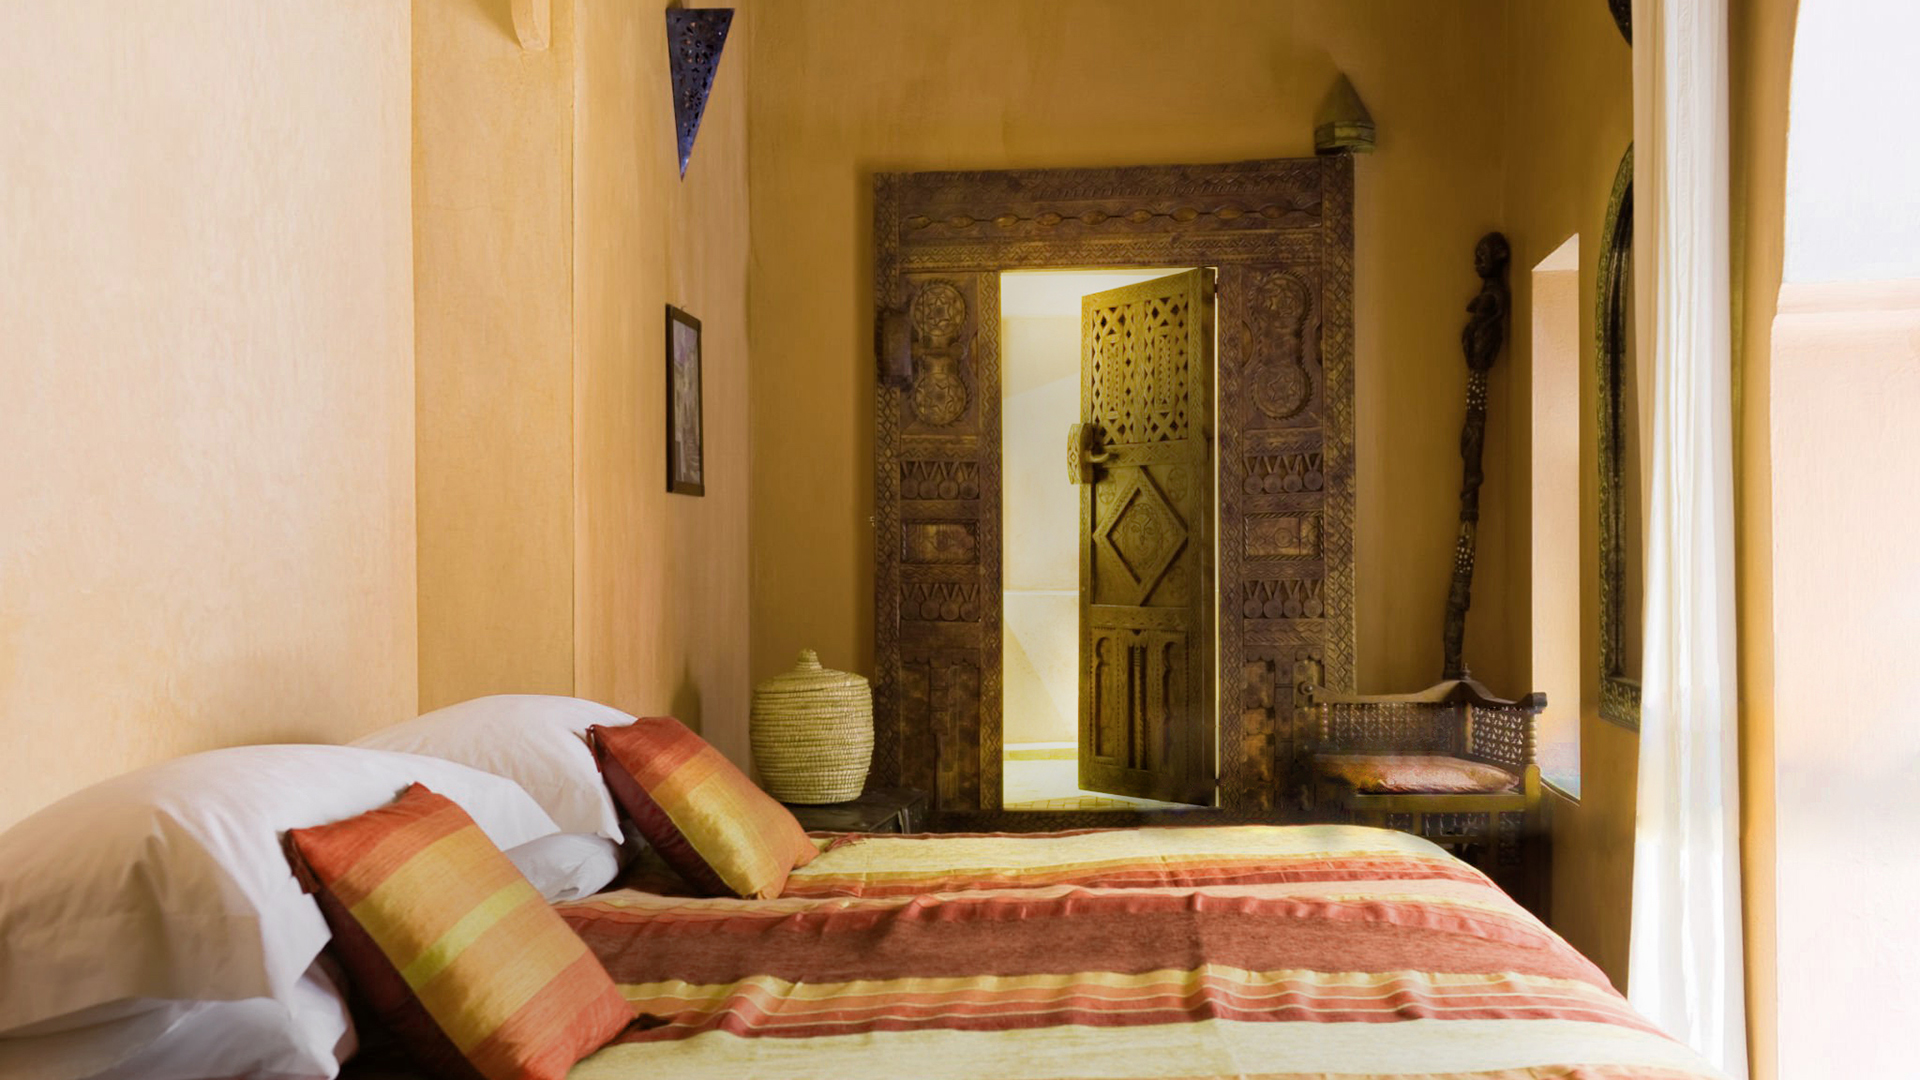 Chambre de style arabe avec tadelakt sur les murs